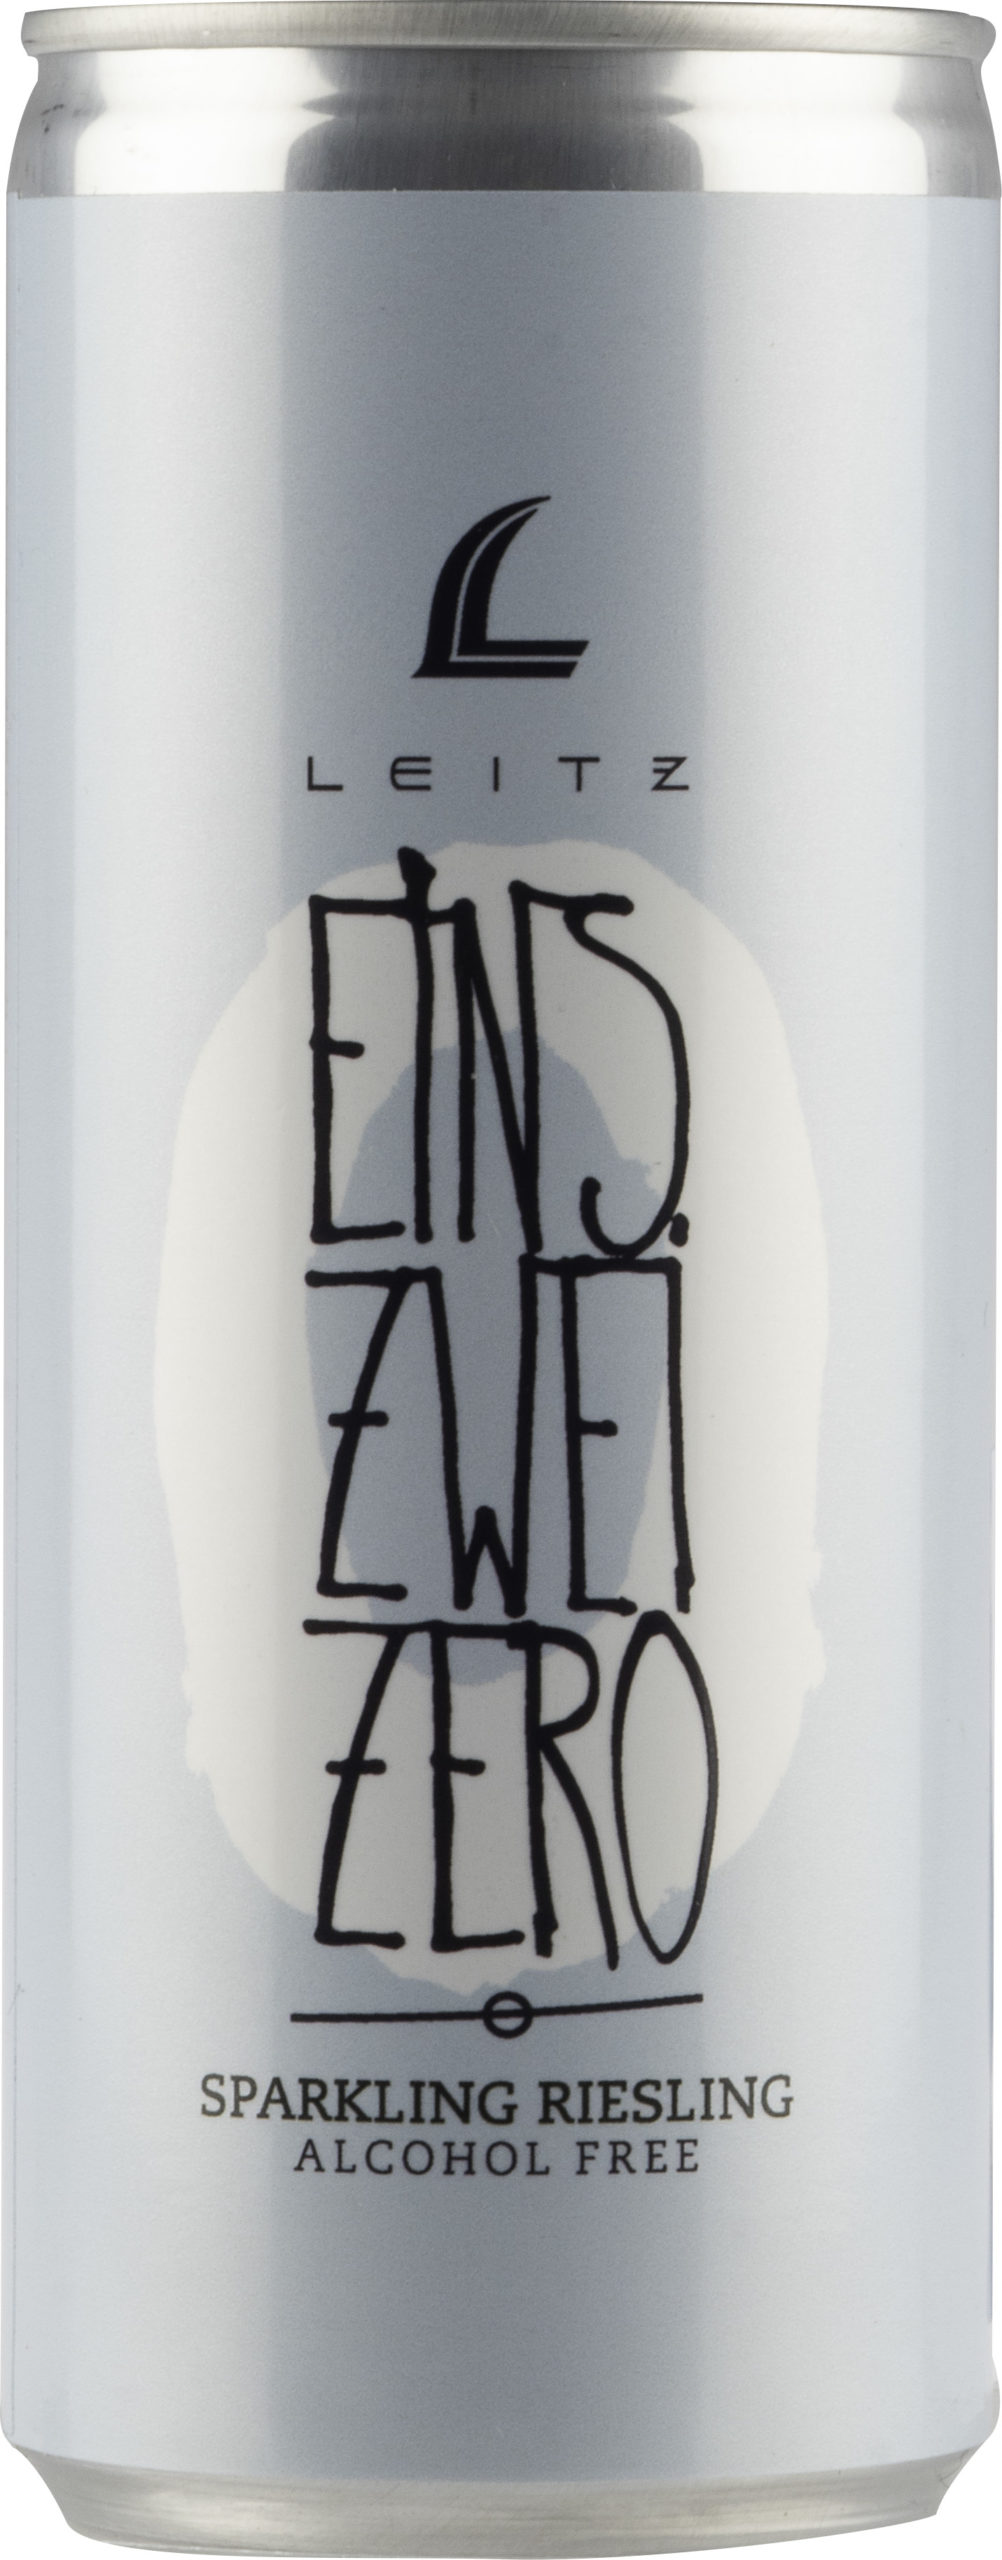 Leitz Leitz Eins-Zwei-Zero Sparkling Riesling Alcohol Free can